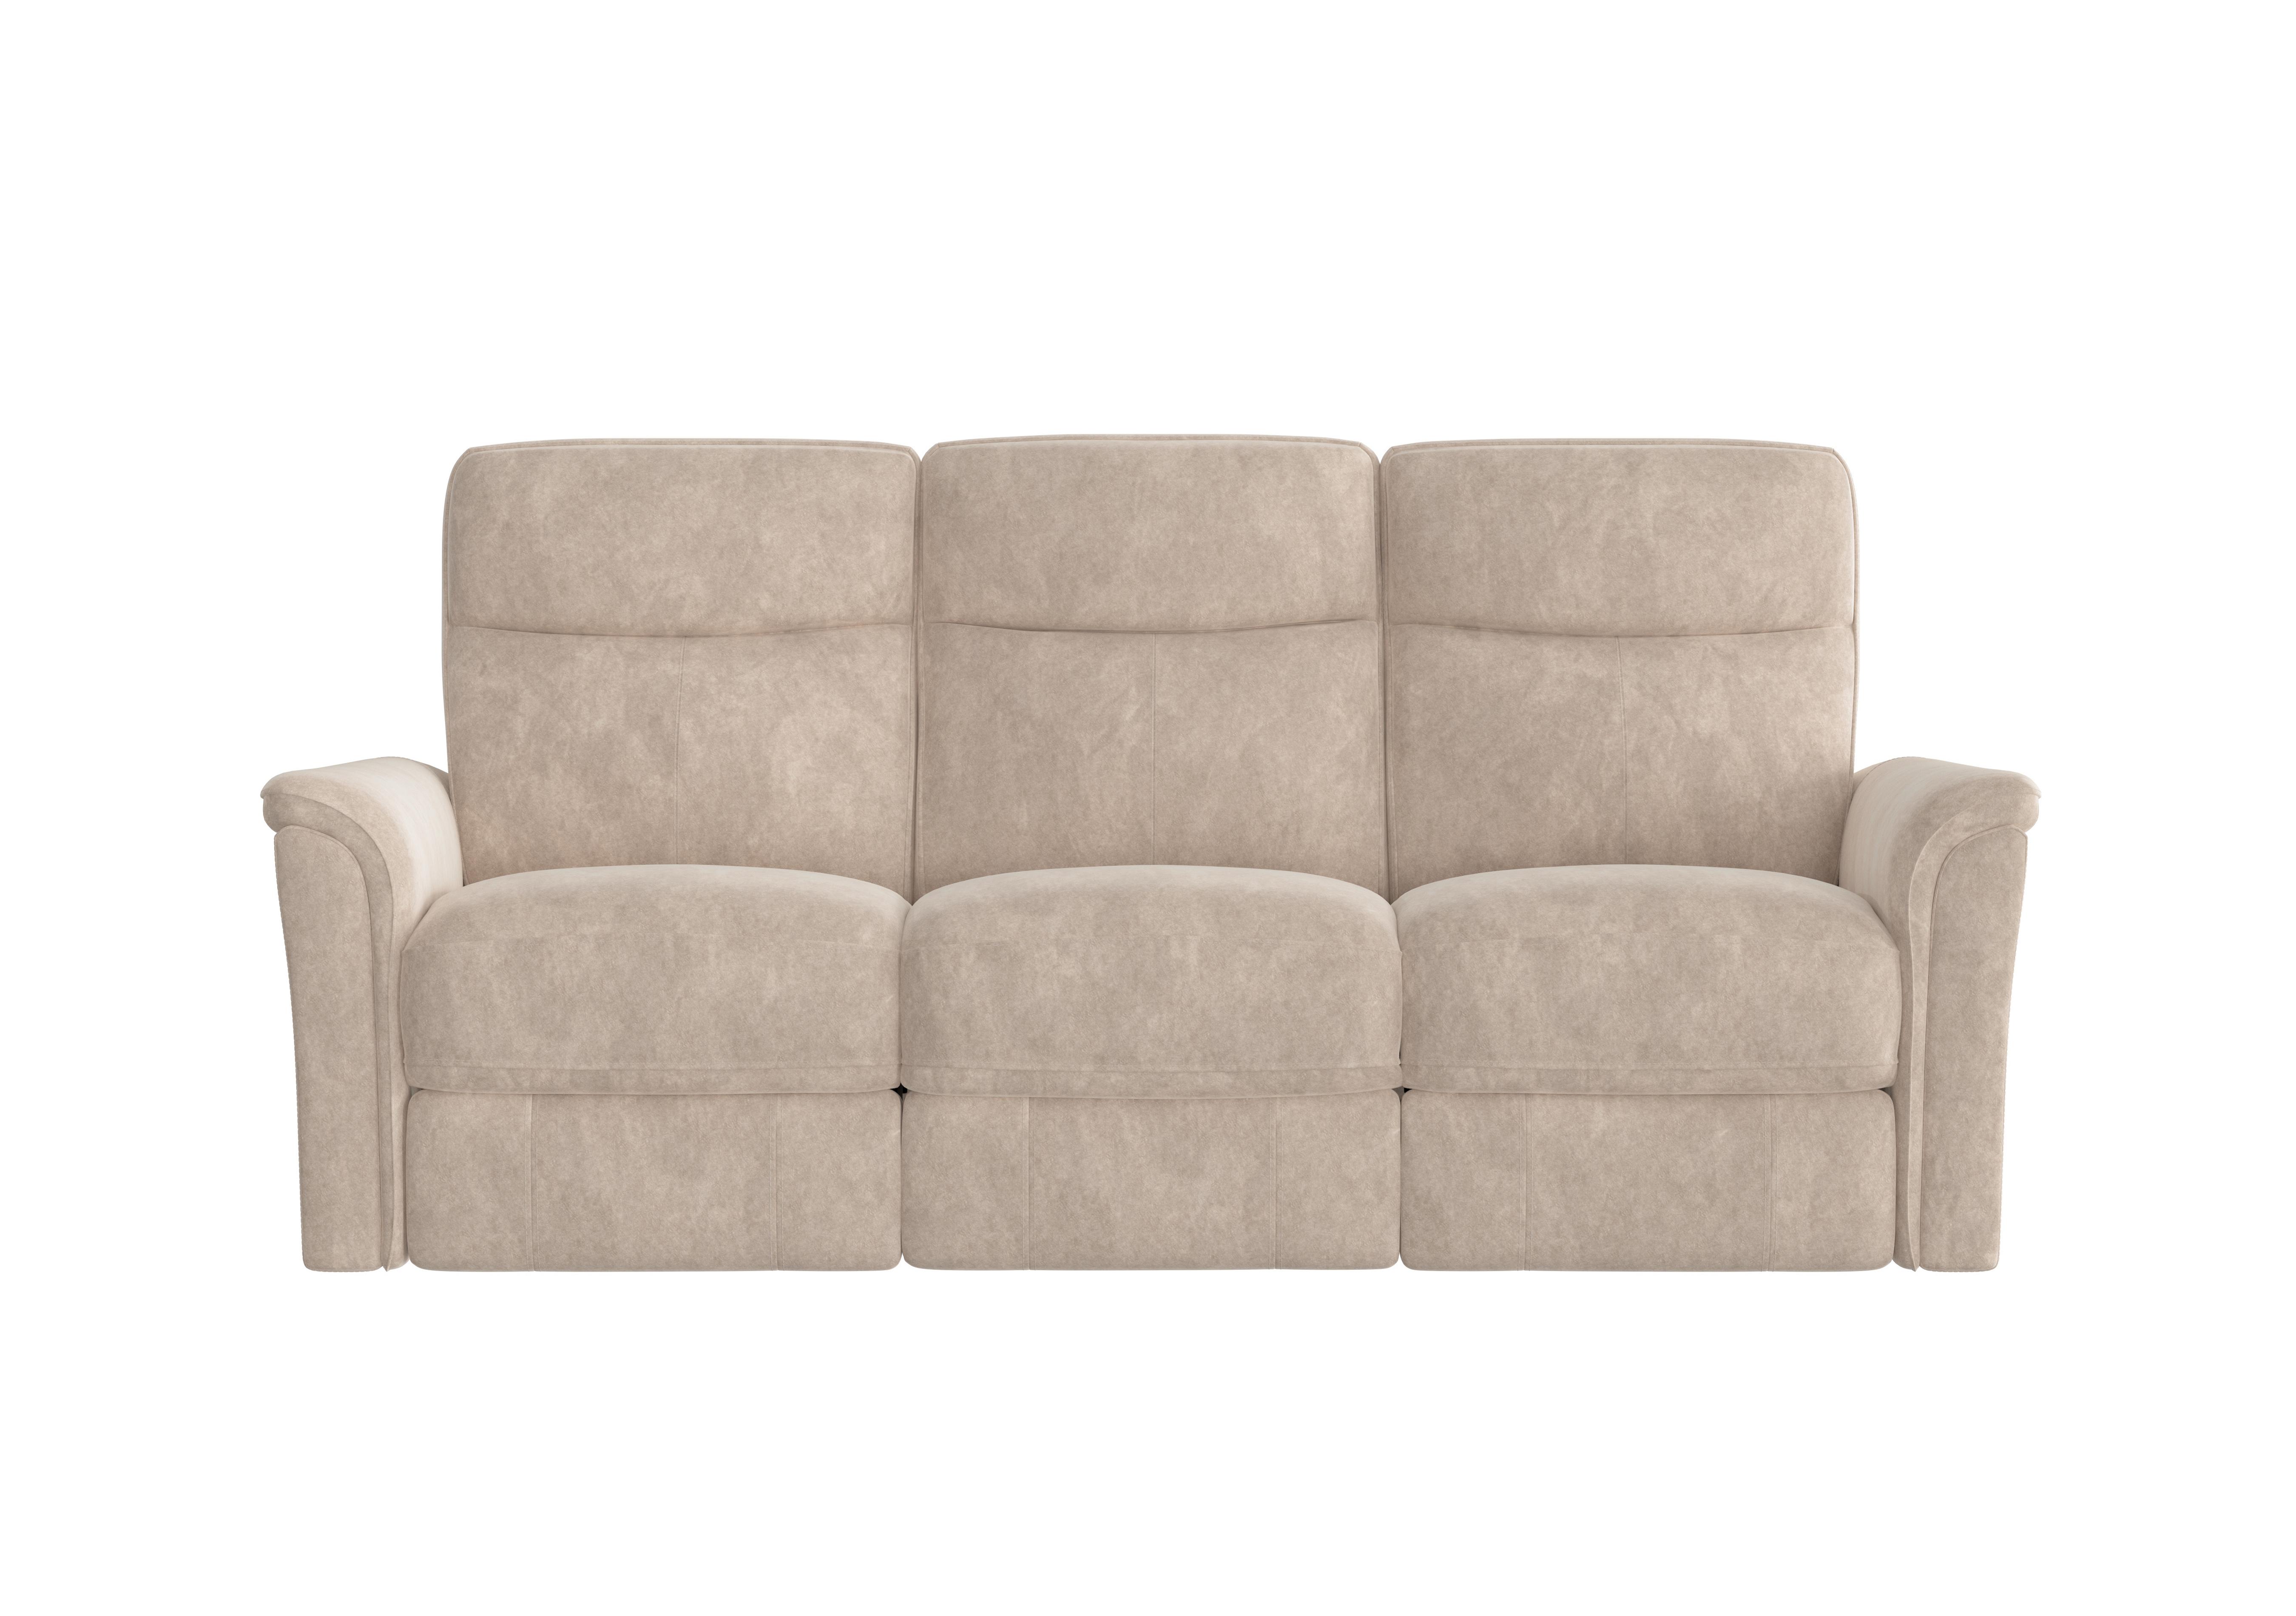 Piccolo 3 Seater Fabric Sofa in Bfa-Bnn-R26 Fv2 Cream on Furniture Village